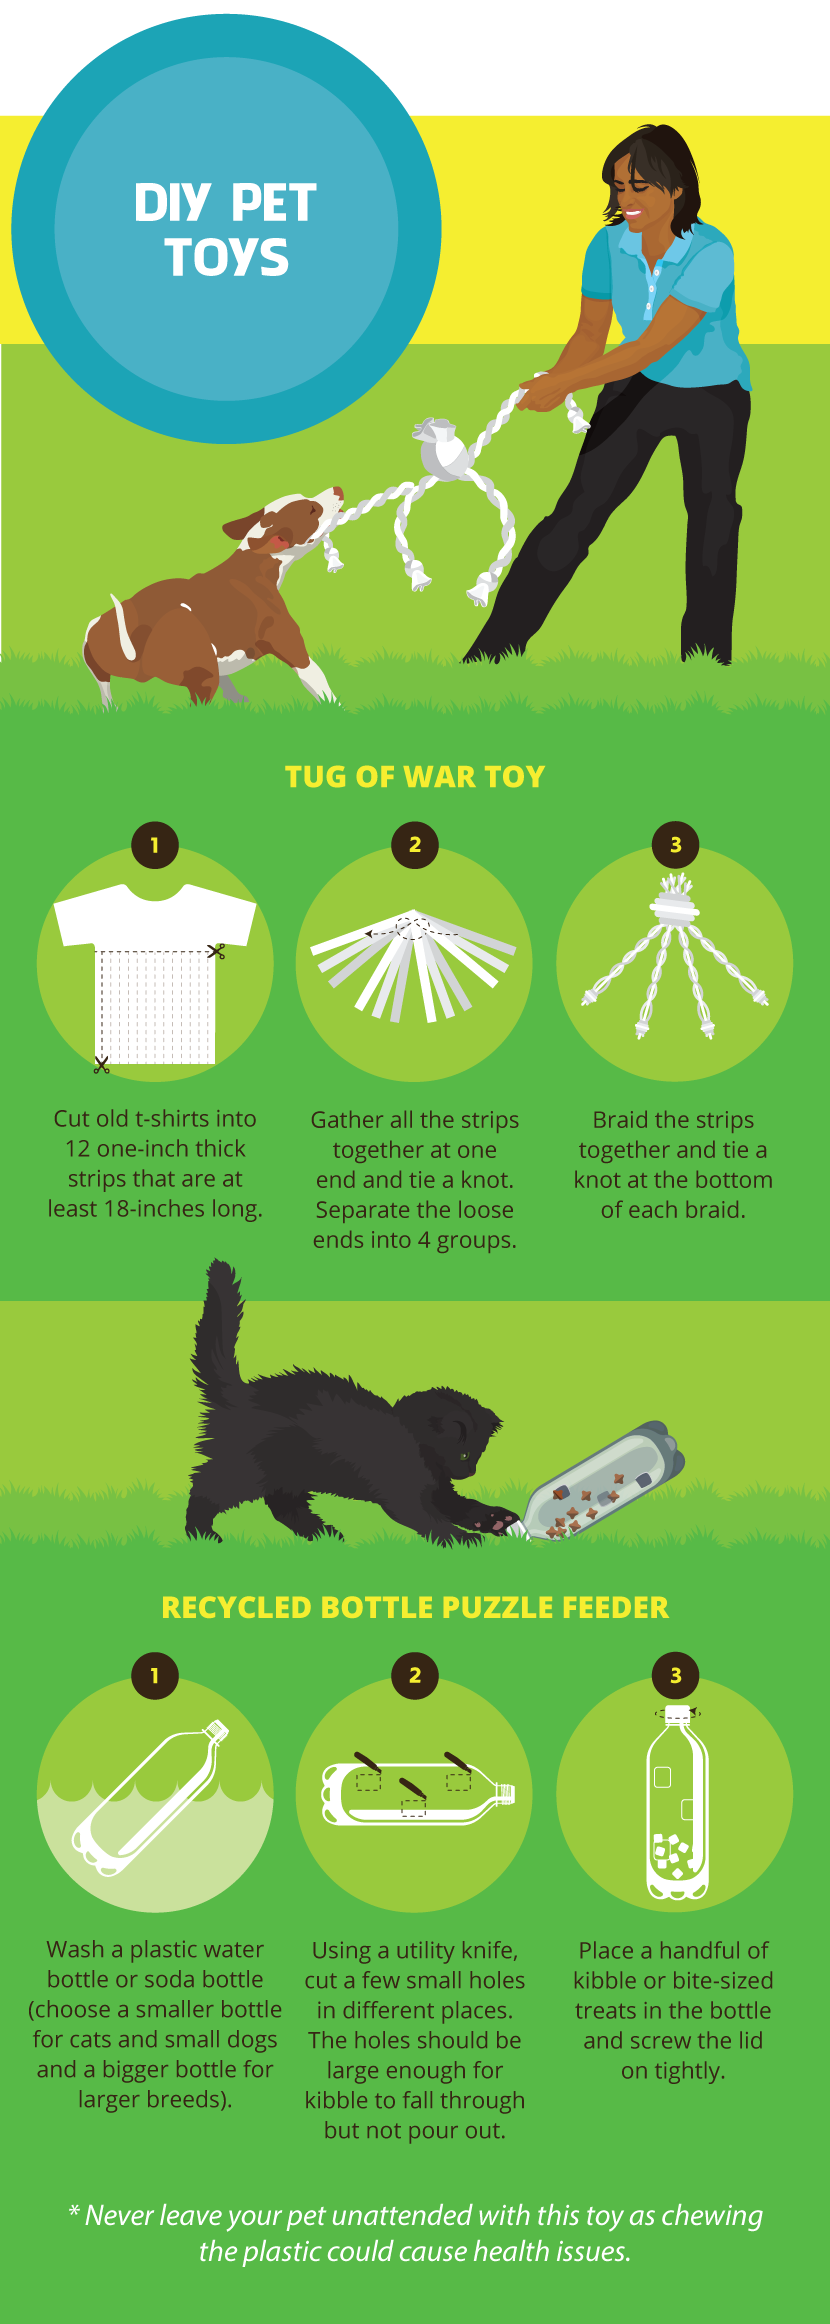 DIY Pet Toys - Green Pets